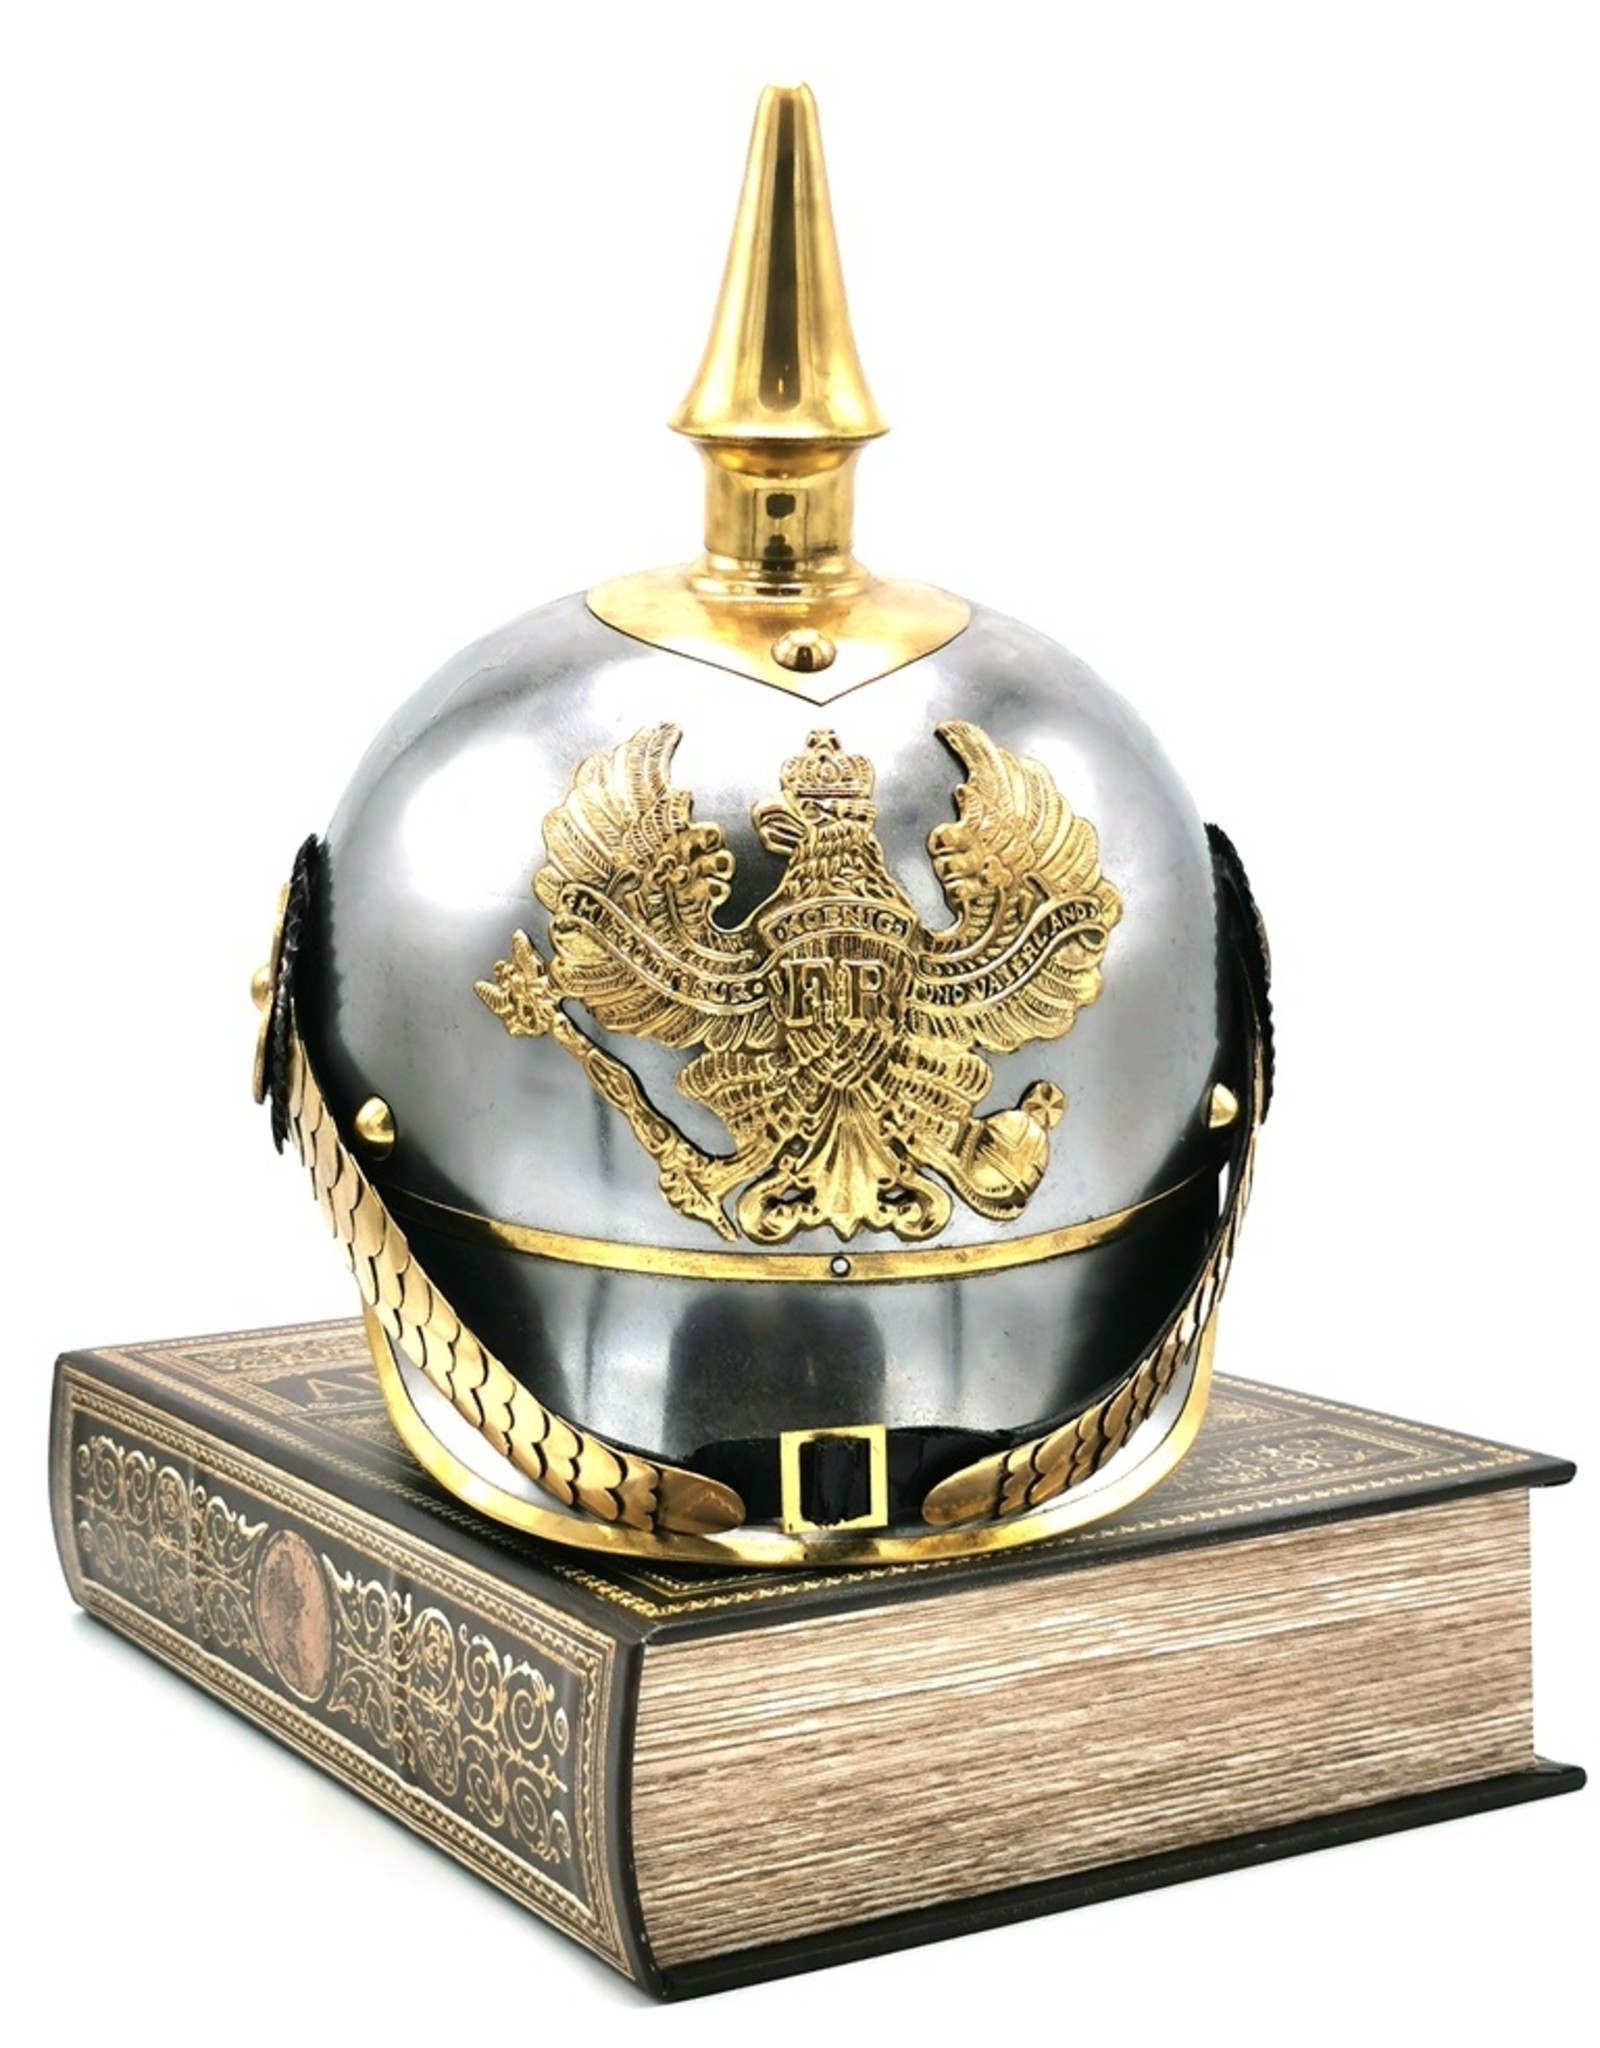 Trukado Pickelhaube Pruisische Helm Draagbare metalen replica